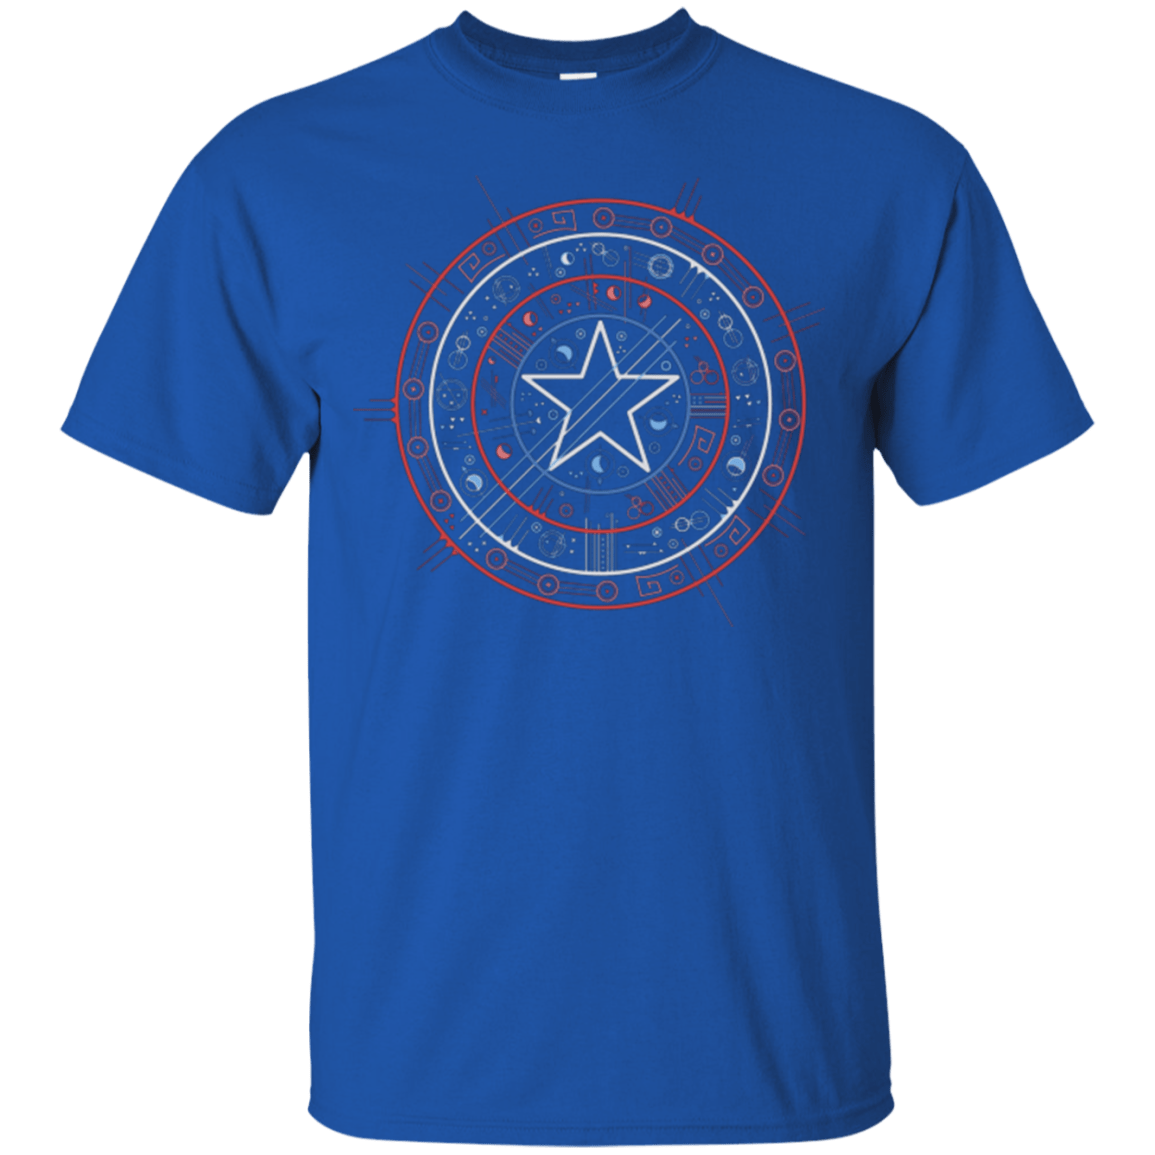 T-Shirts Royal / Small Tech America T-Shirt